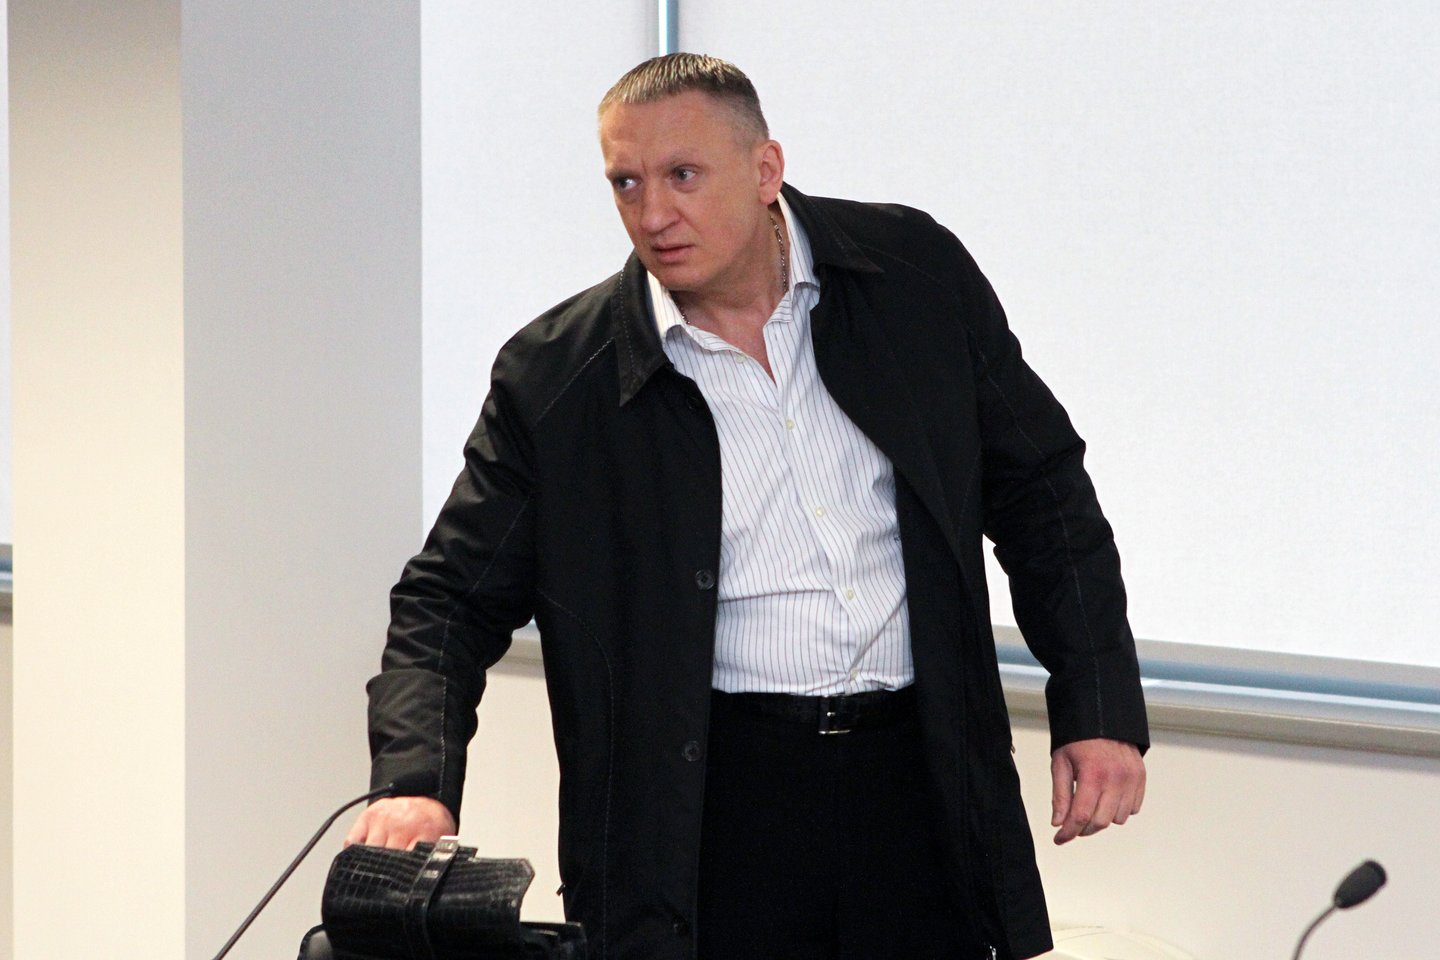  R.Daškevičiaus nužudymo byloje įtariamas R.Dromantas-Ilgas (nuotr.) ir jo bendrininku laikomas R.Užukauskas šiuo metu yra suimti.<br> M.Patašiaus nuotr.